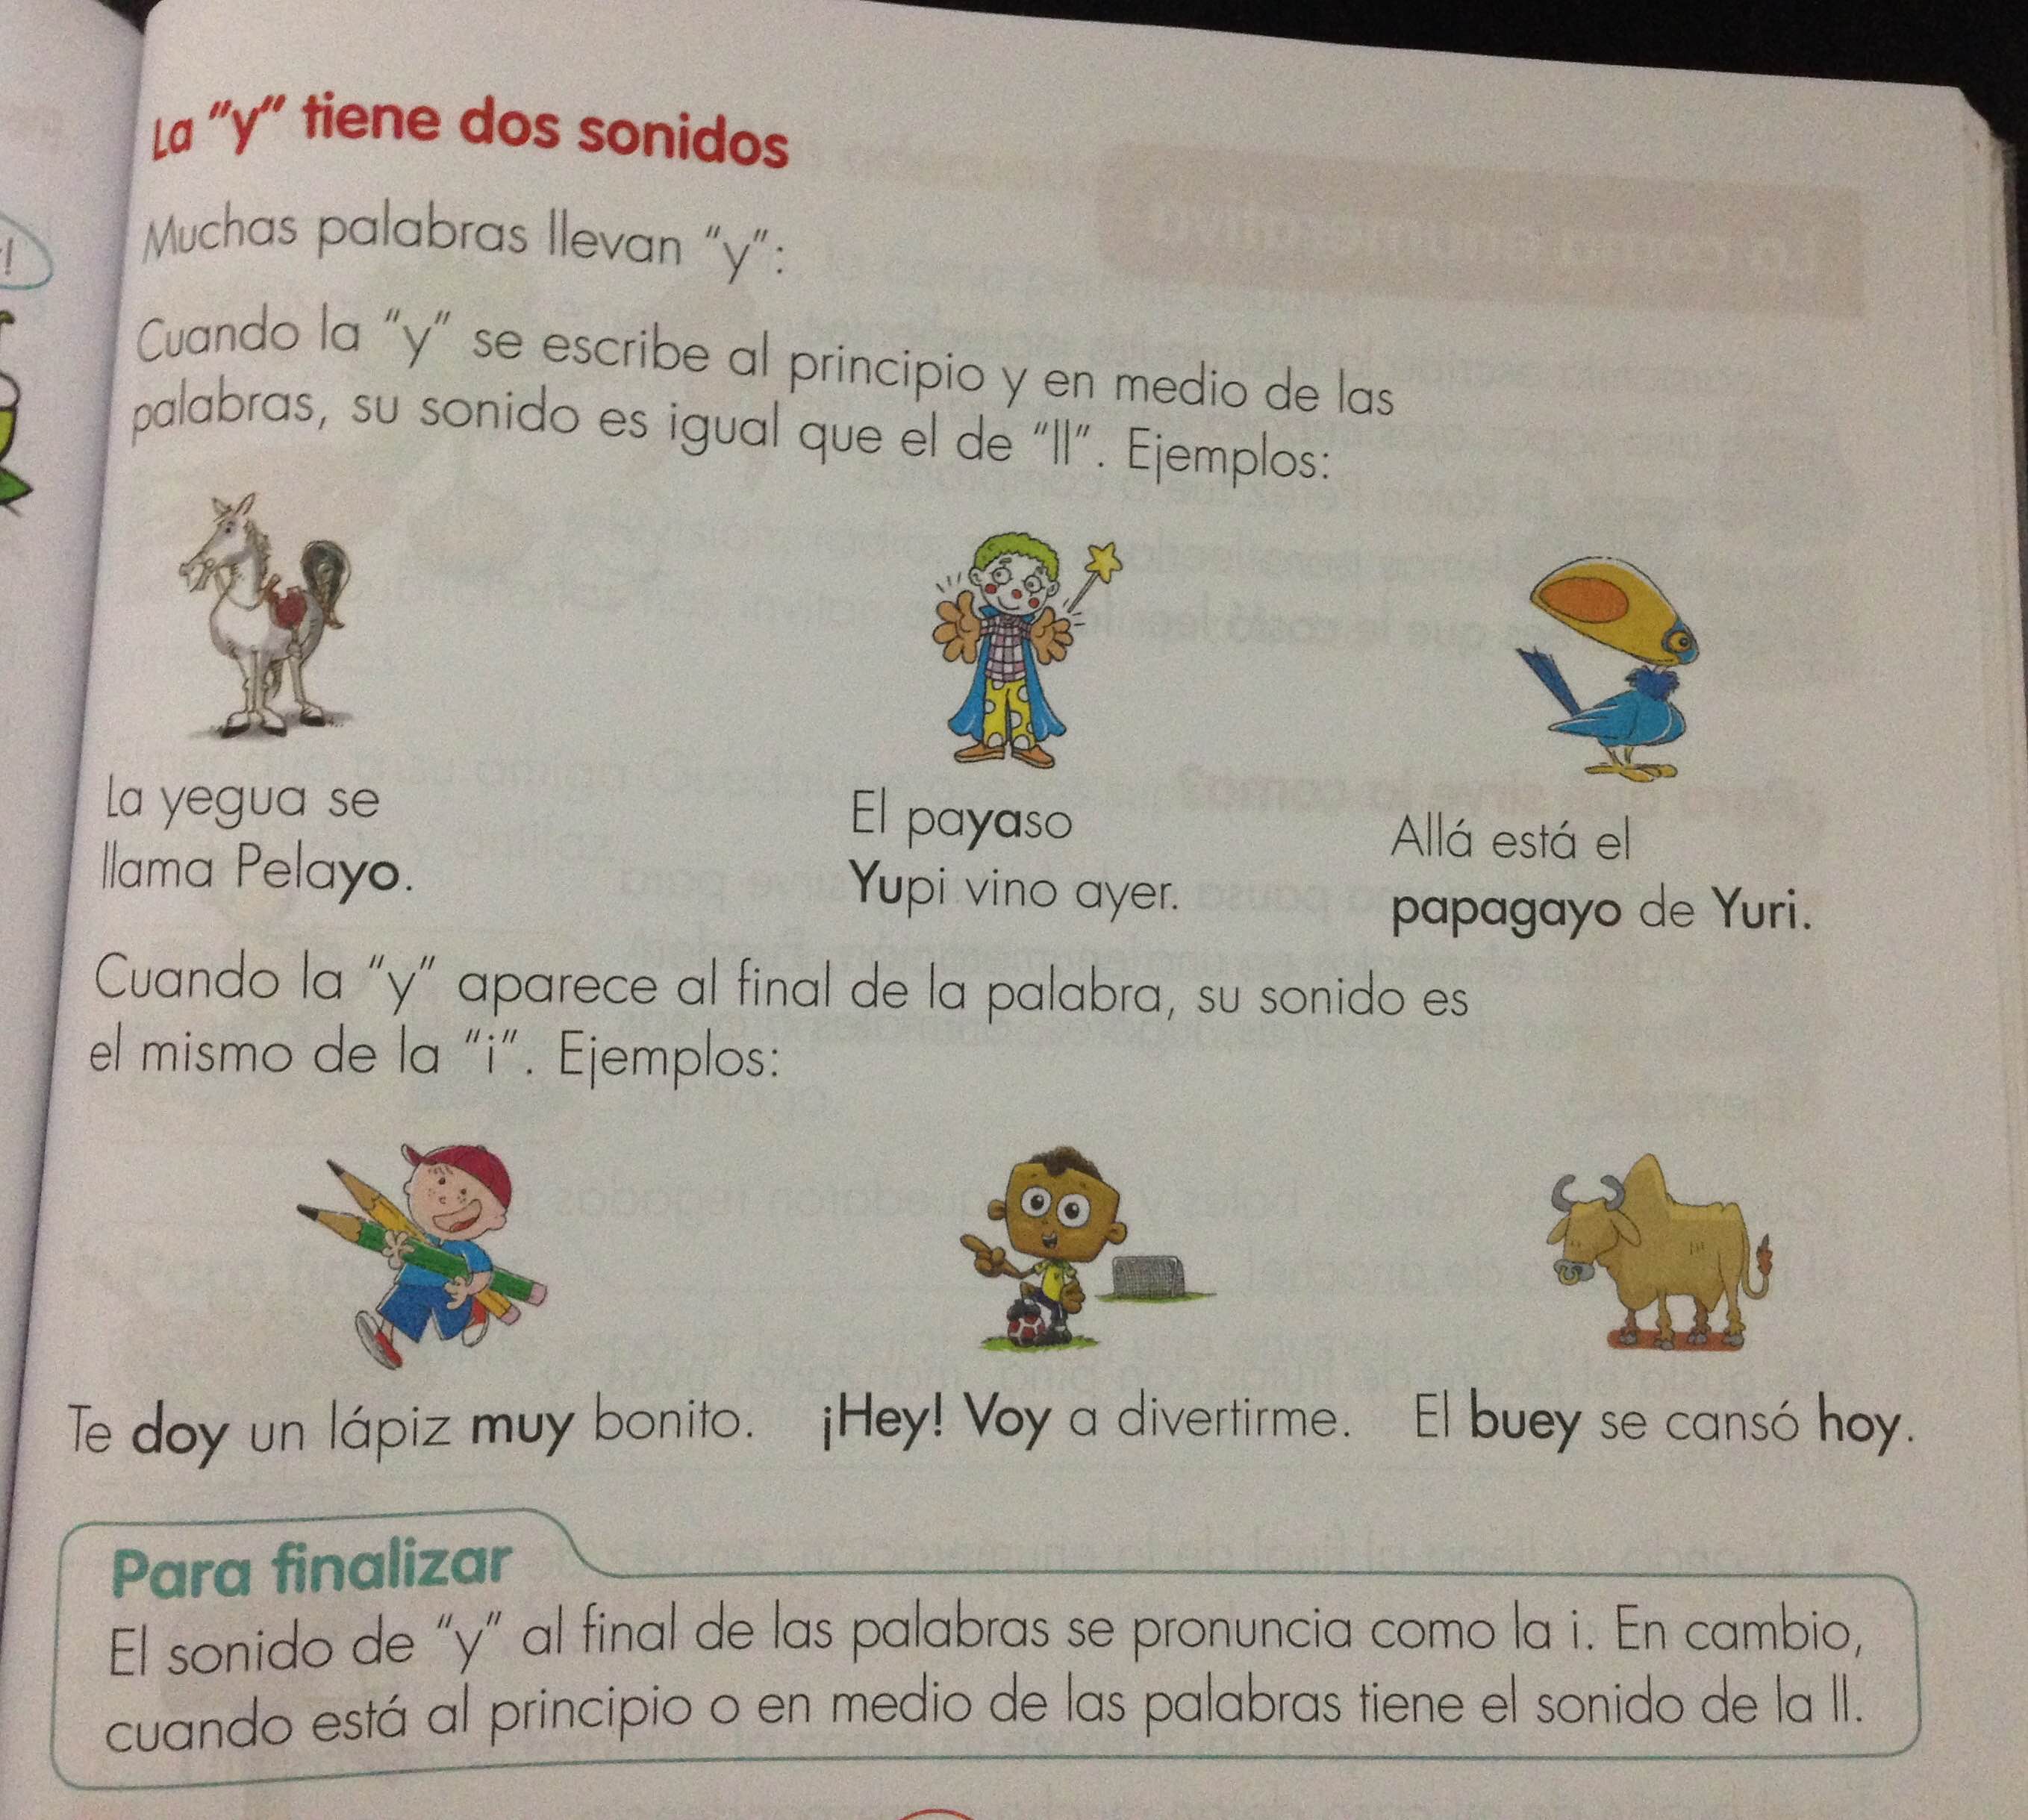 palabras terminadas en -ay, -ey, -oy, uy | Blog Español CE1